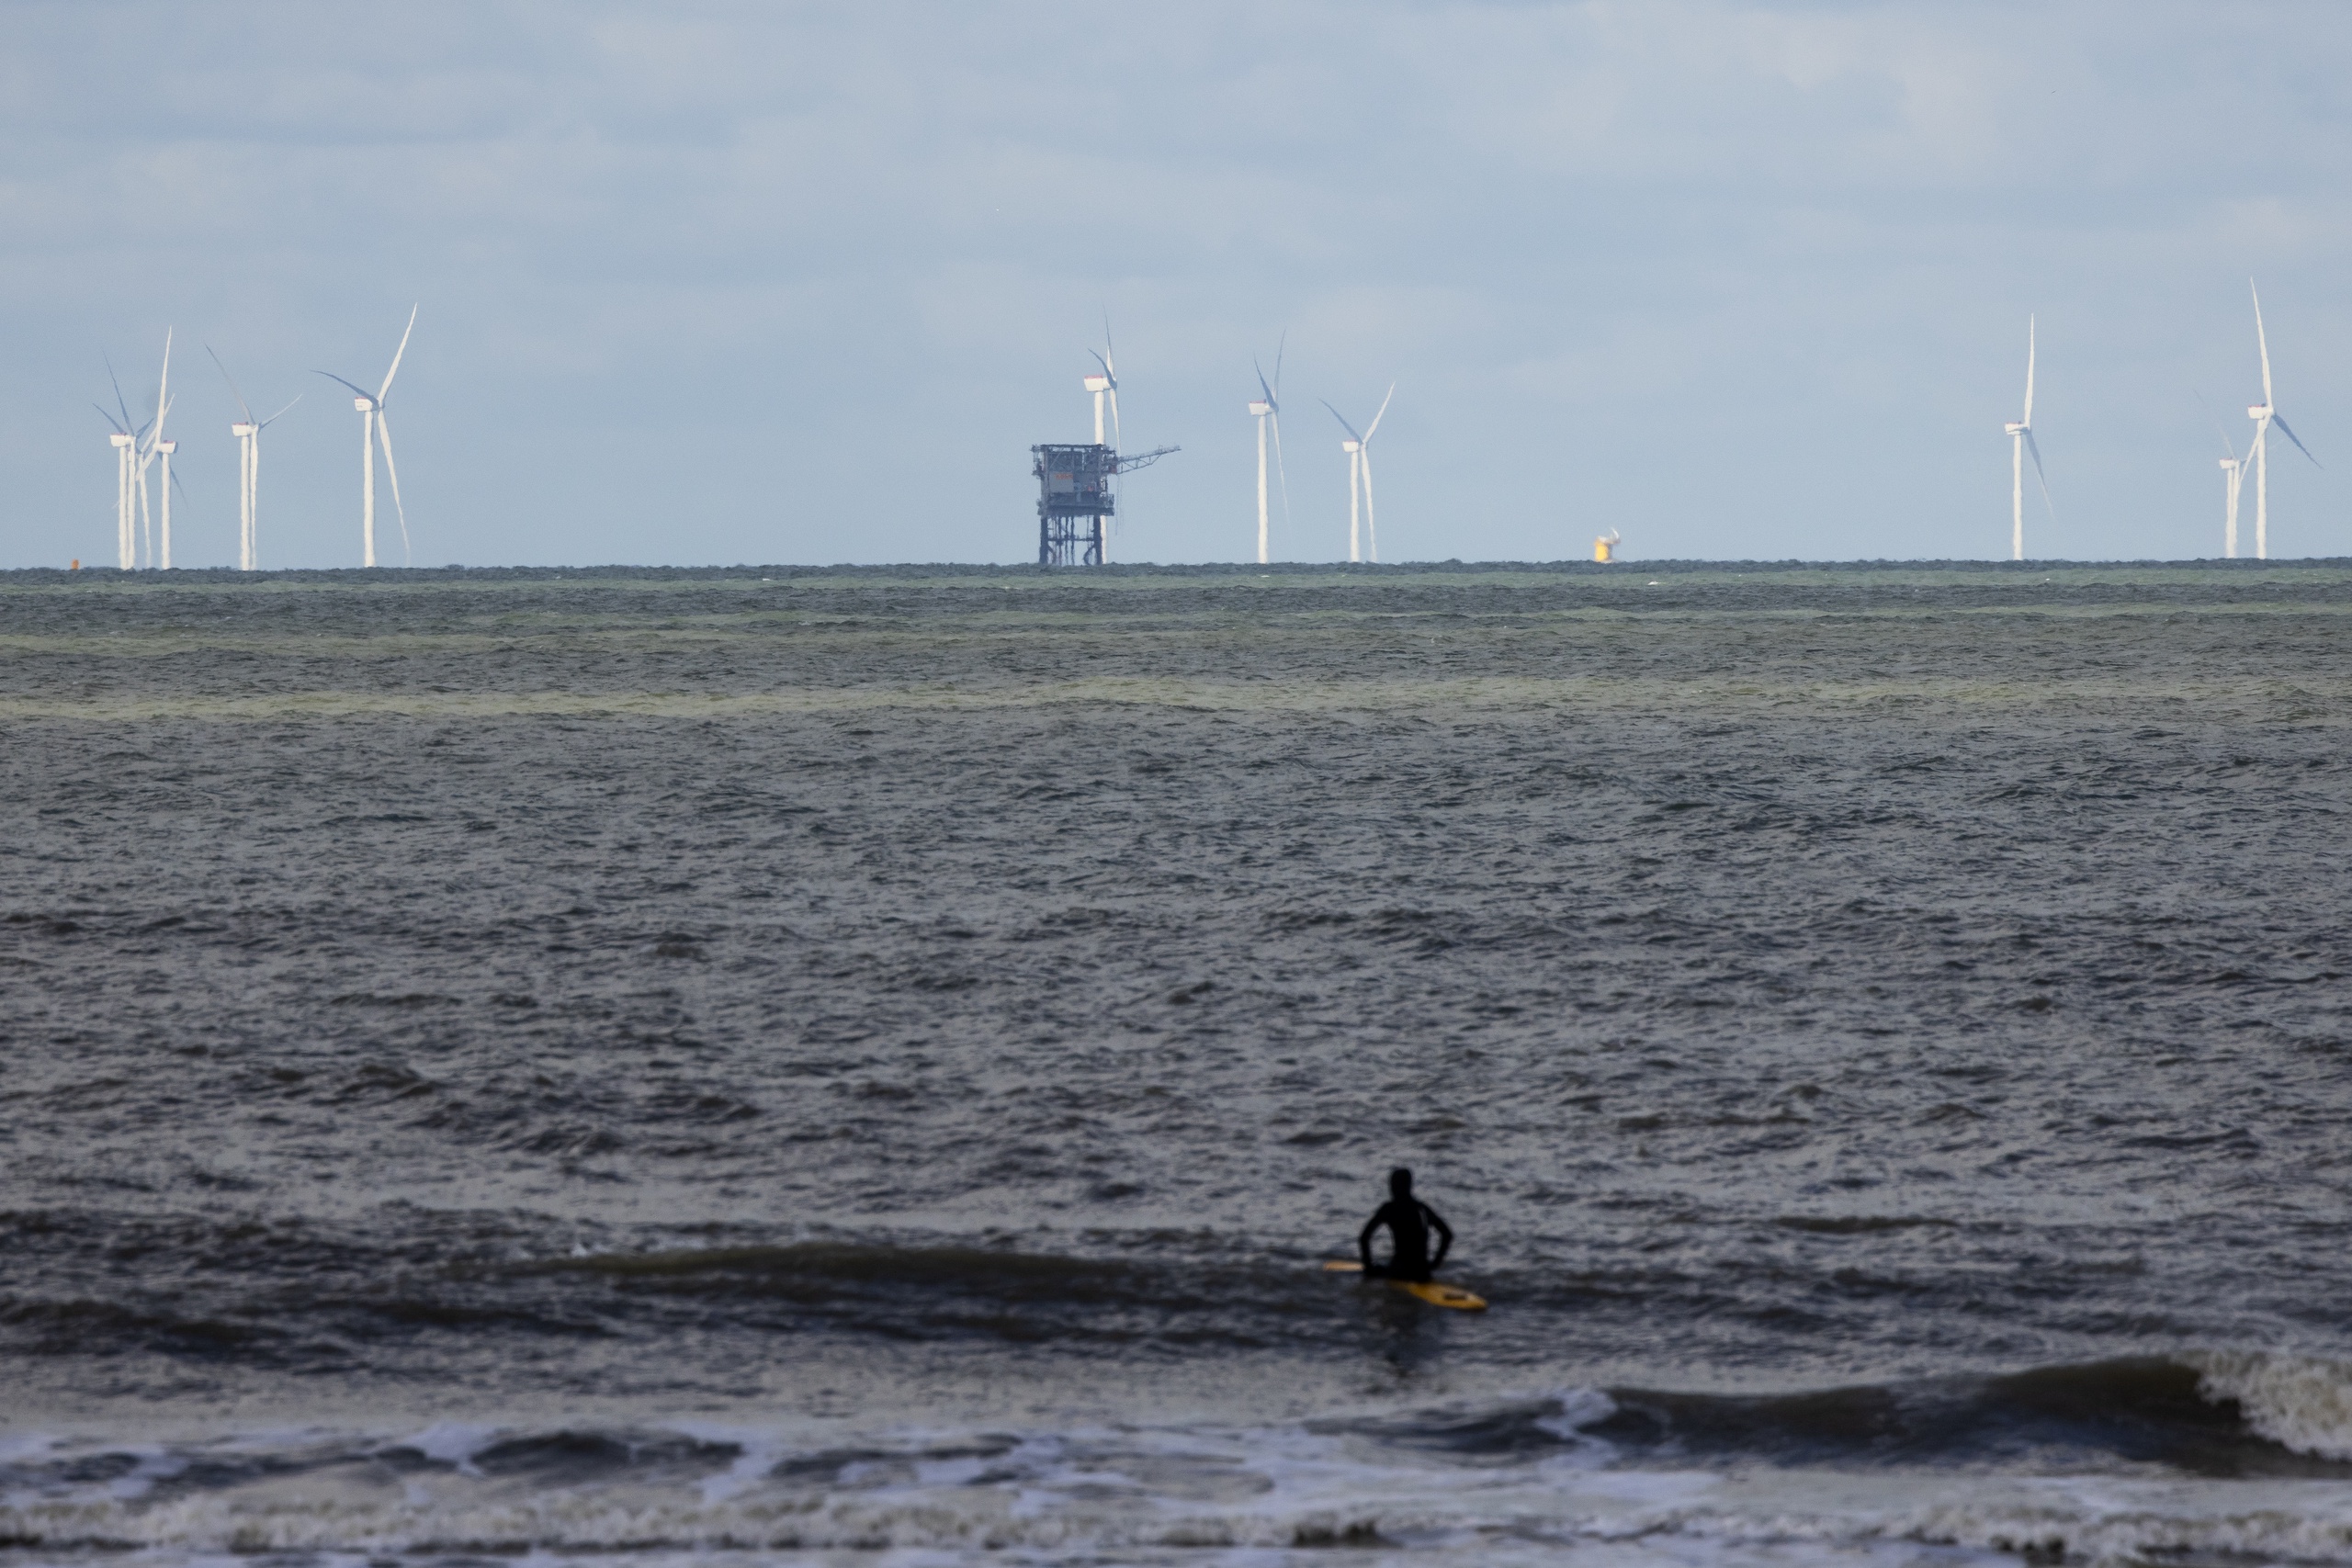 Nederland gaat op de Noordzee met behulp van windmolens groene waterstof produceren. De waterstoffabriek wordt ten noorden van de Waddeneilanden gebouwd en moet over zo'n acht jaar klaar zijn voor gebruik.